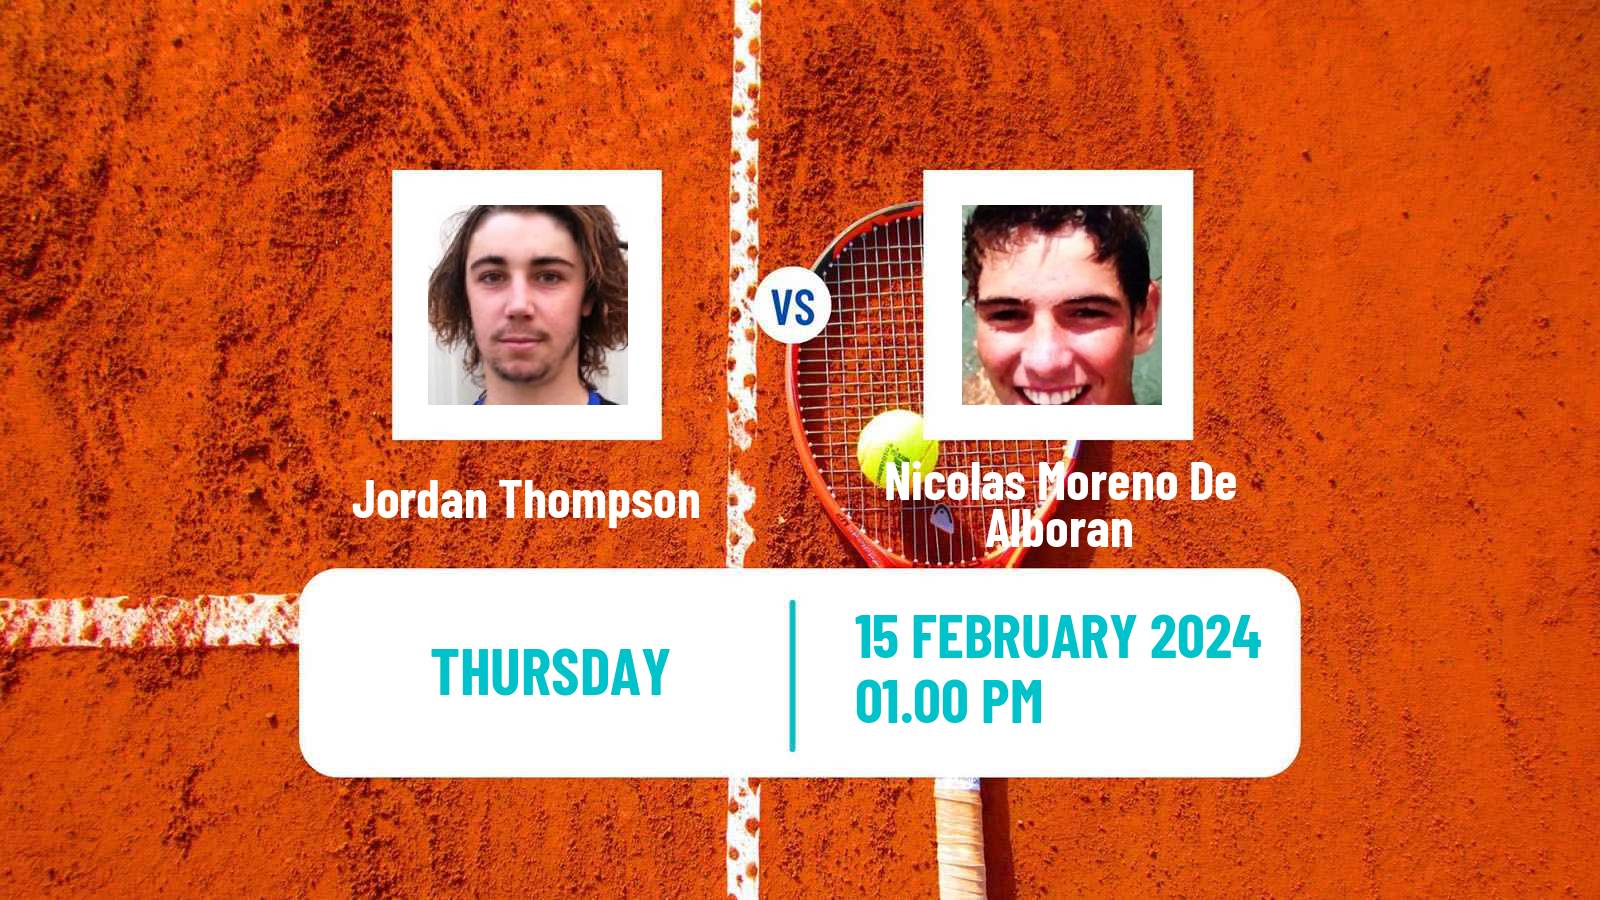 Tennis ATP Delray Beach Jordan Thompson - Nicolas Moreno De Alboran